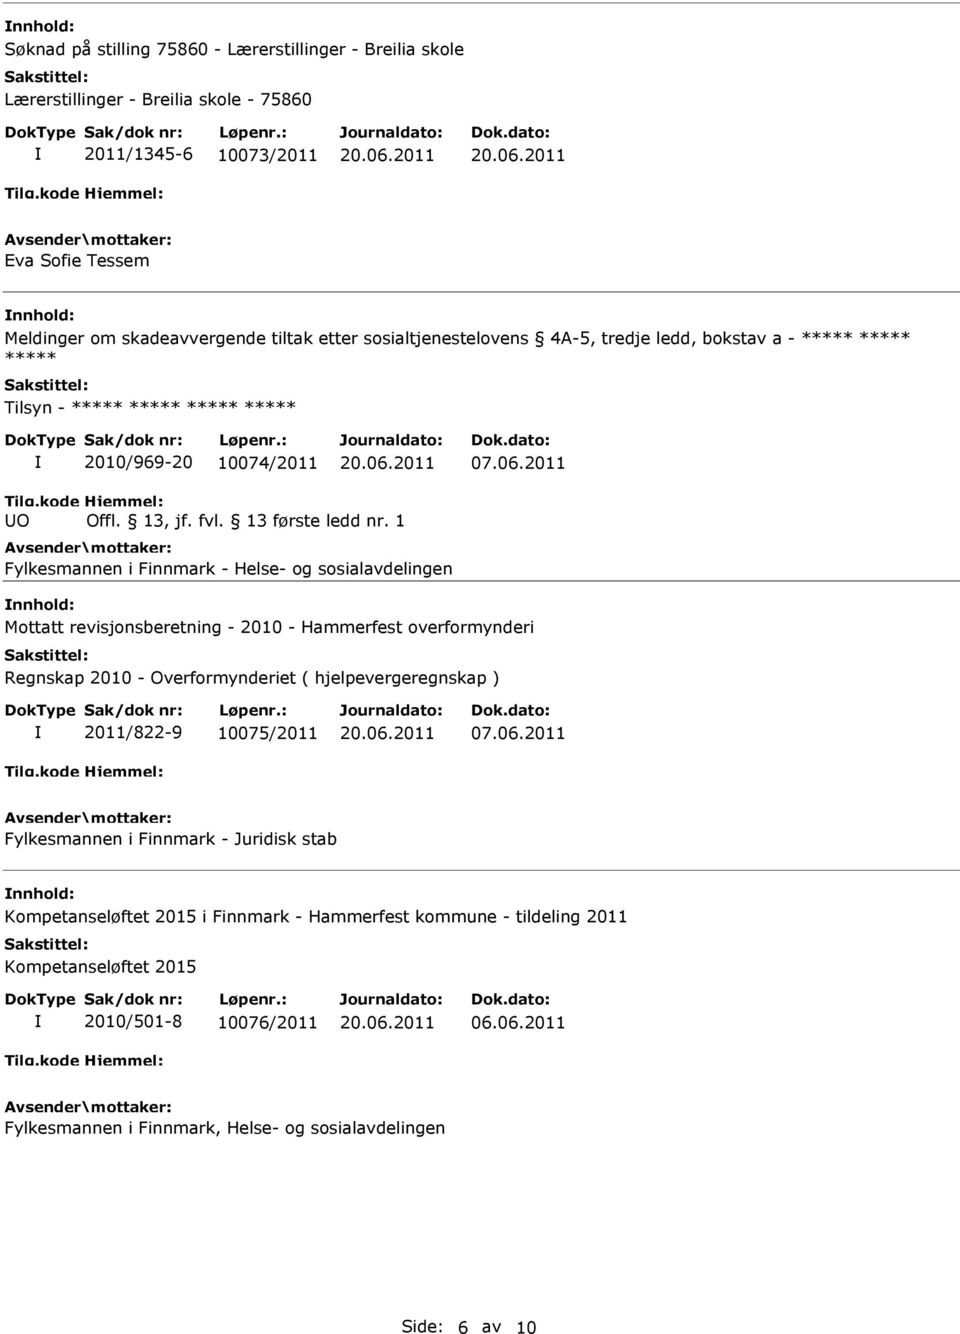 2011 UO Fylkesmannen i Finnmark - Helse- og sosialavdelingen nnhold: Mottatt revisjonsberetning - 2010 - Hammerfest overformynderi Regnskap 2010 - Overformynderiet ( hjelpevergeregnskap